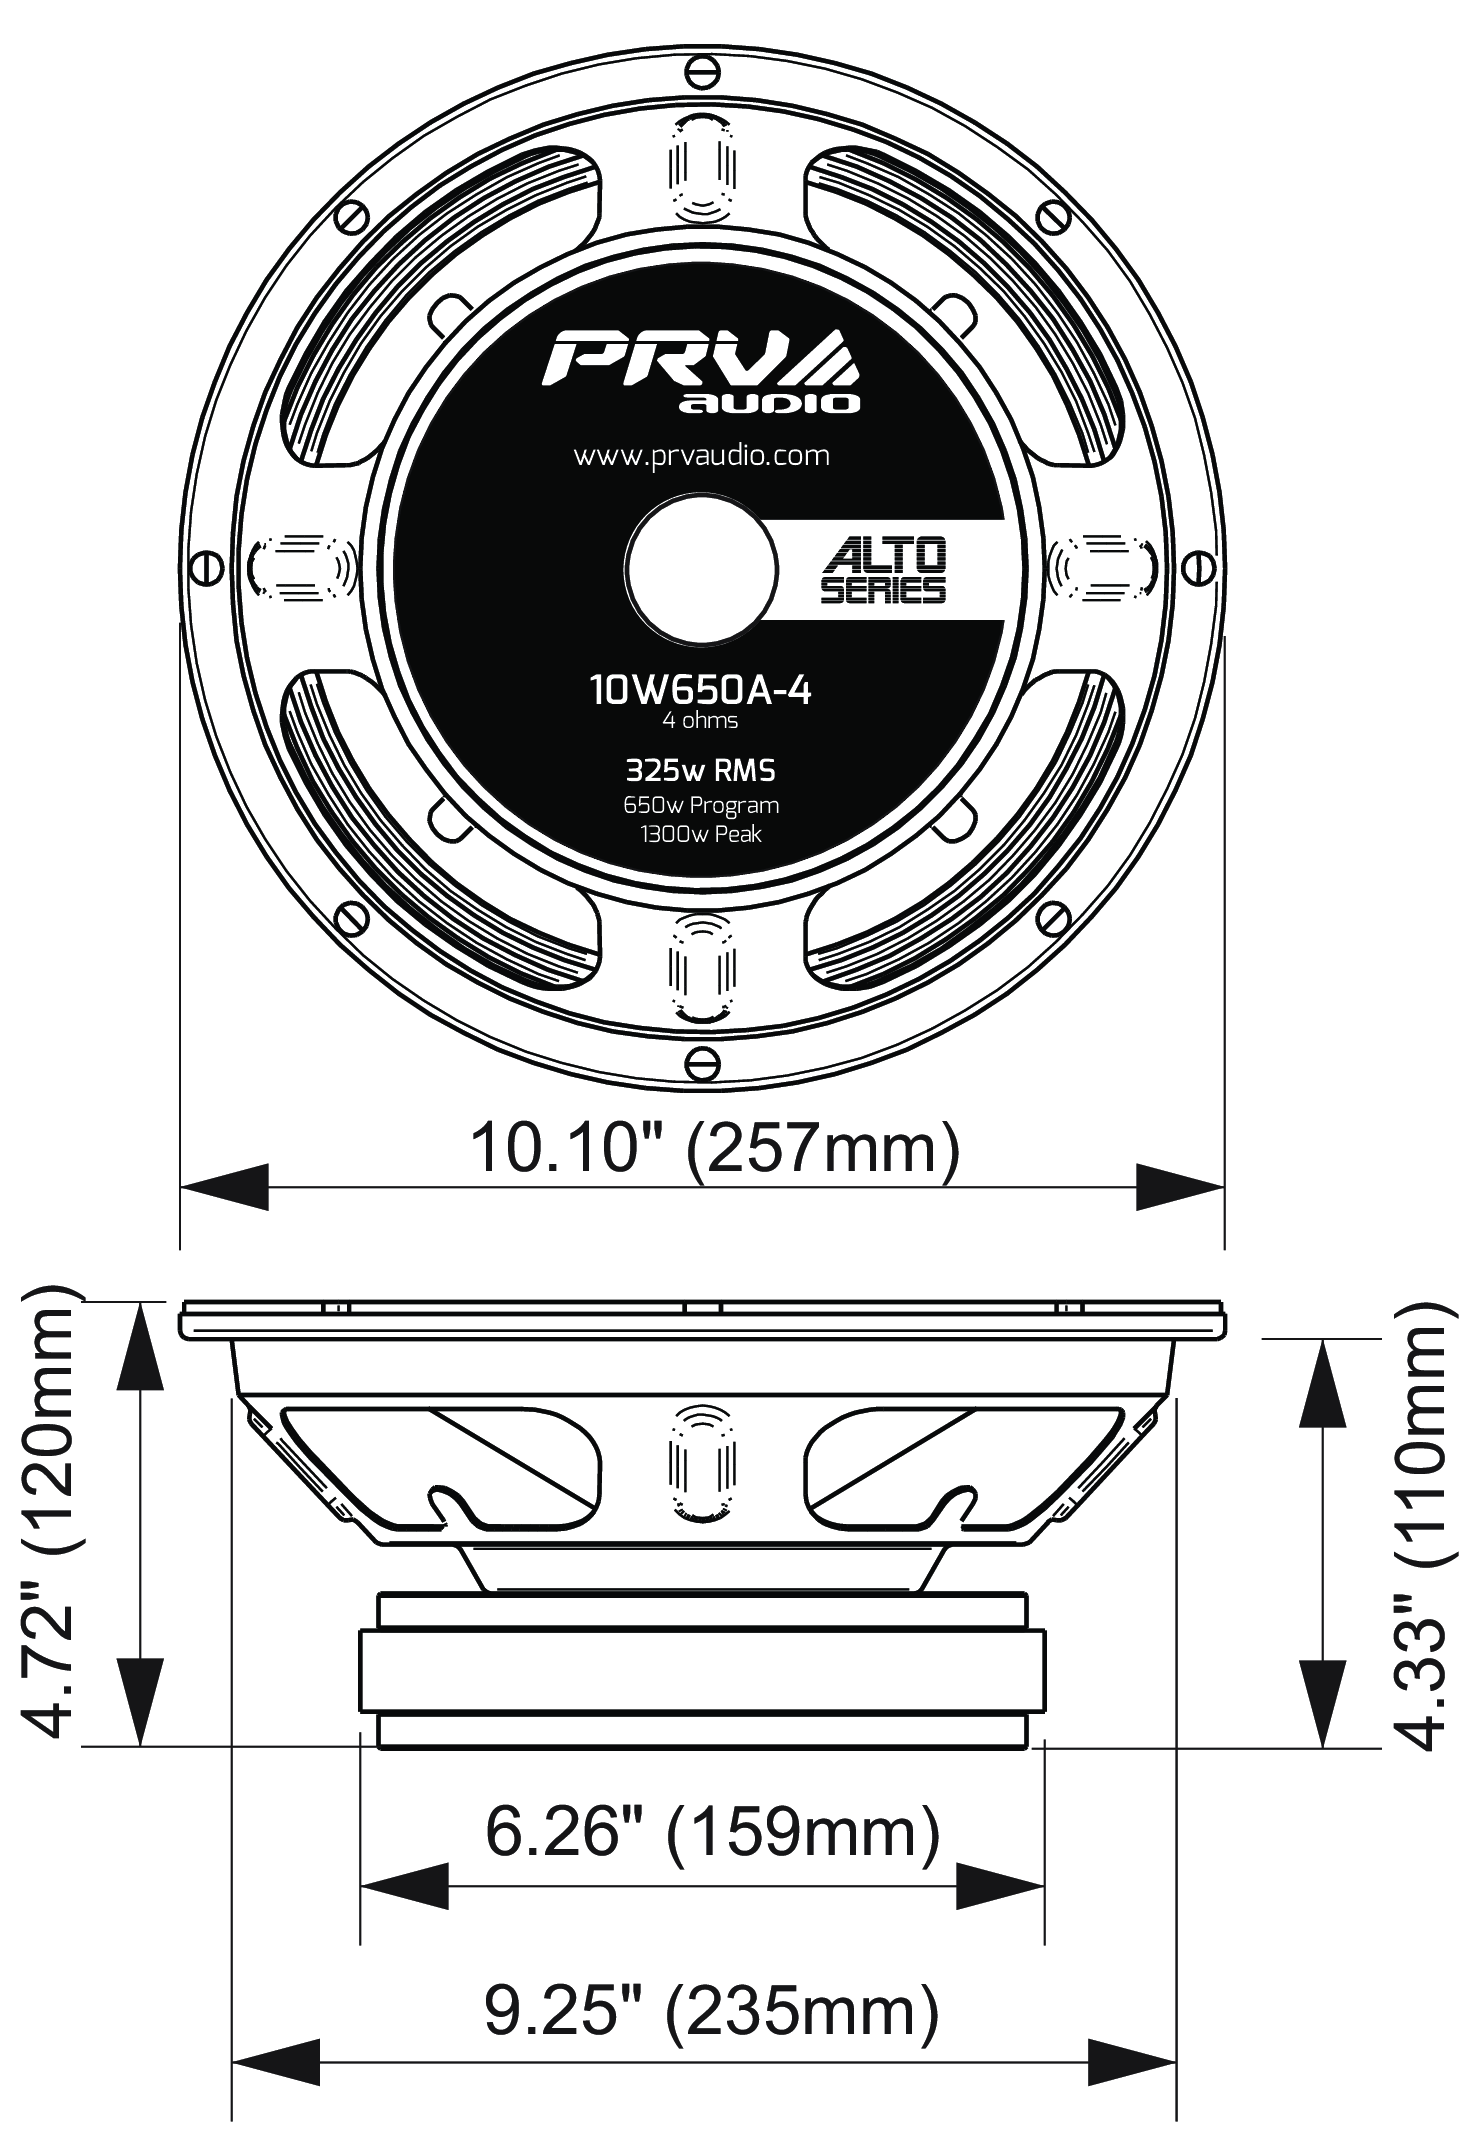 PRV Audio 10W650A-4 Dimensions